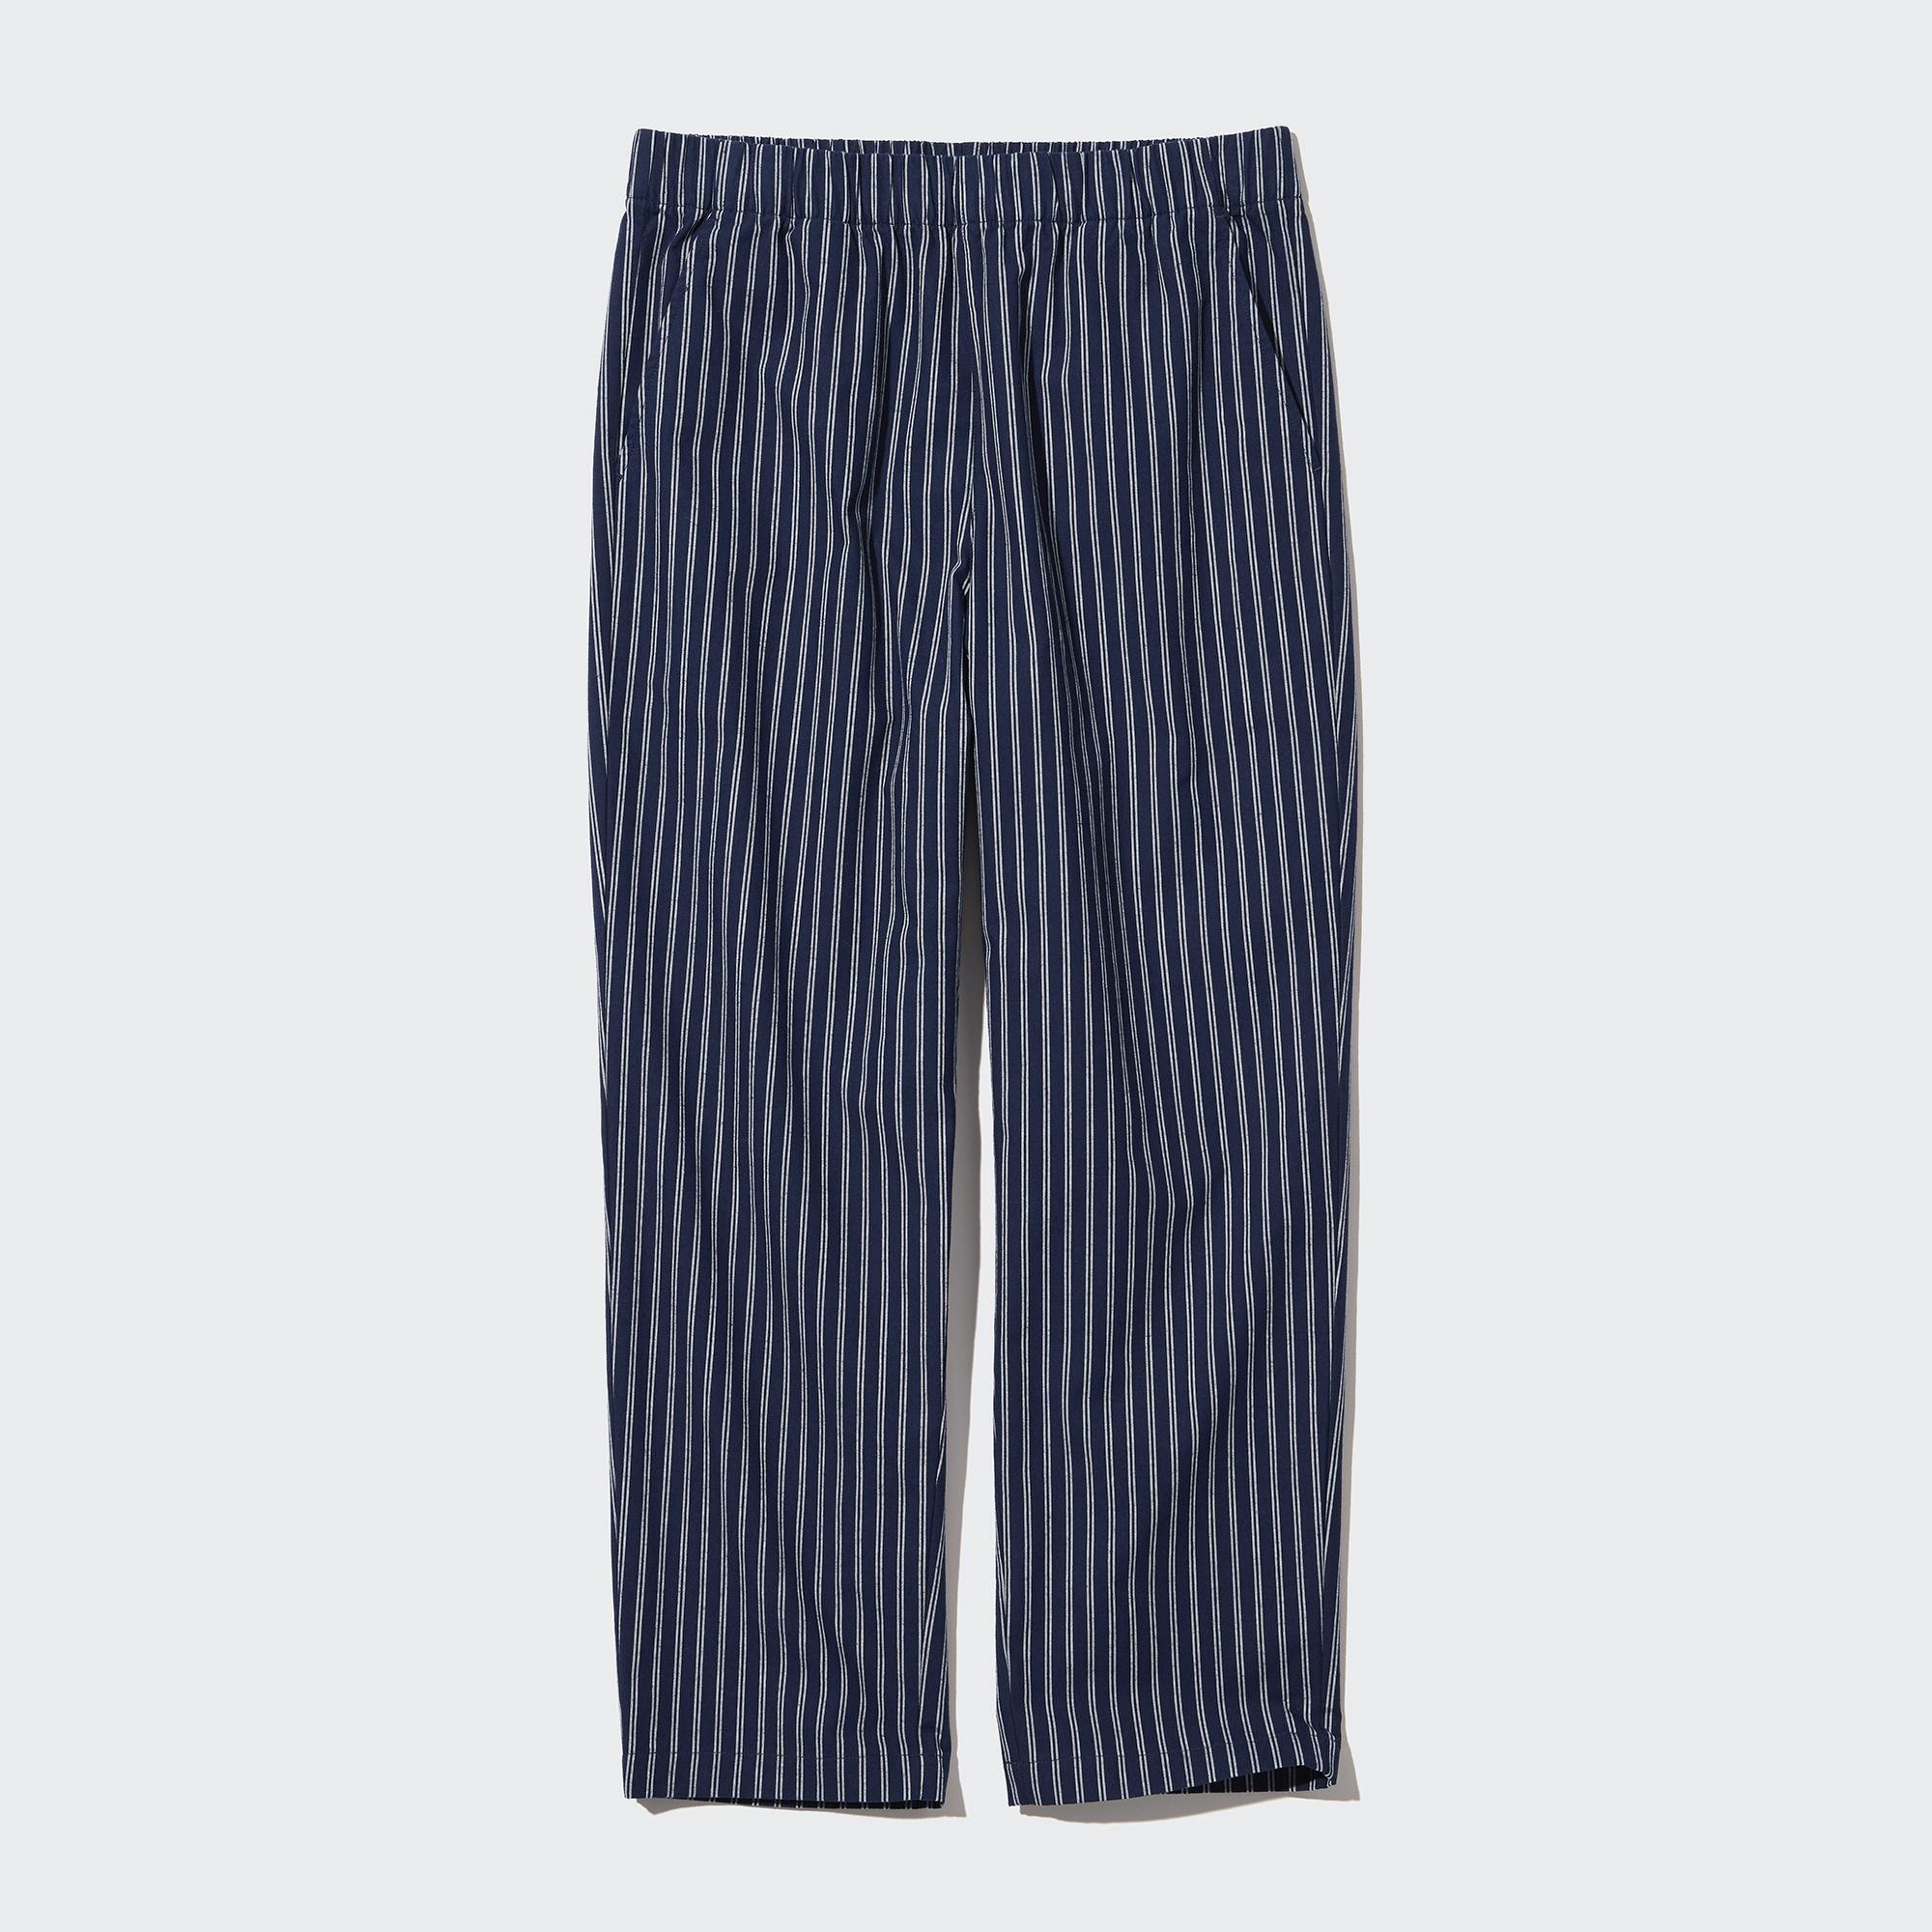 Striped trousers Skinny Fit - Dark blue/Striped - Men | H&M IN